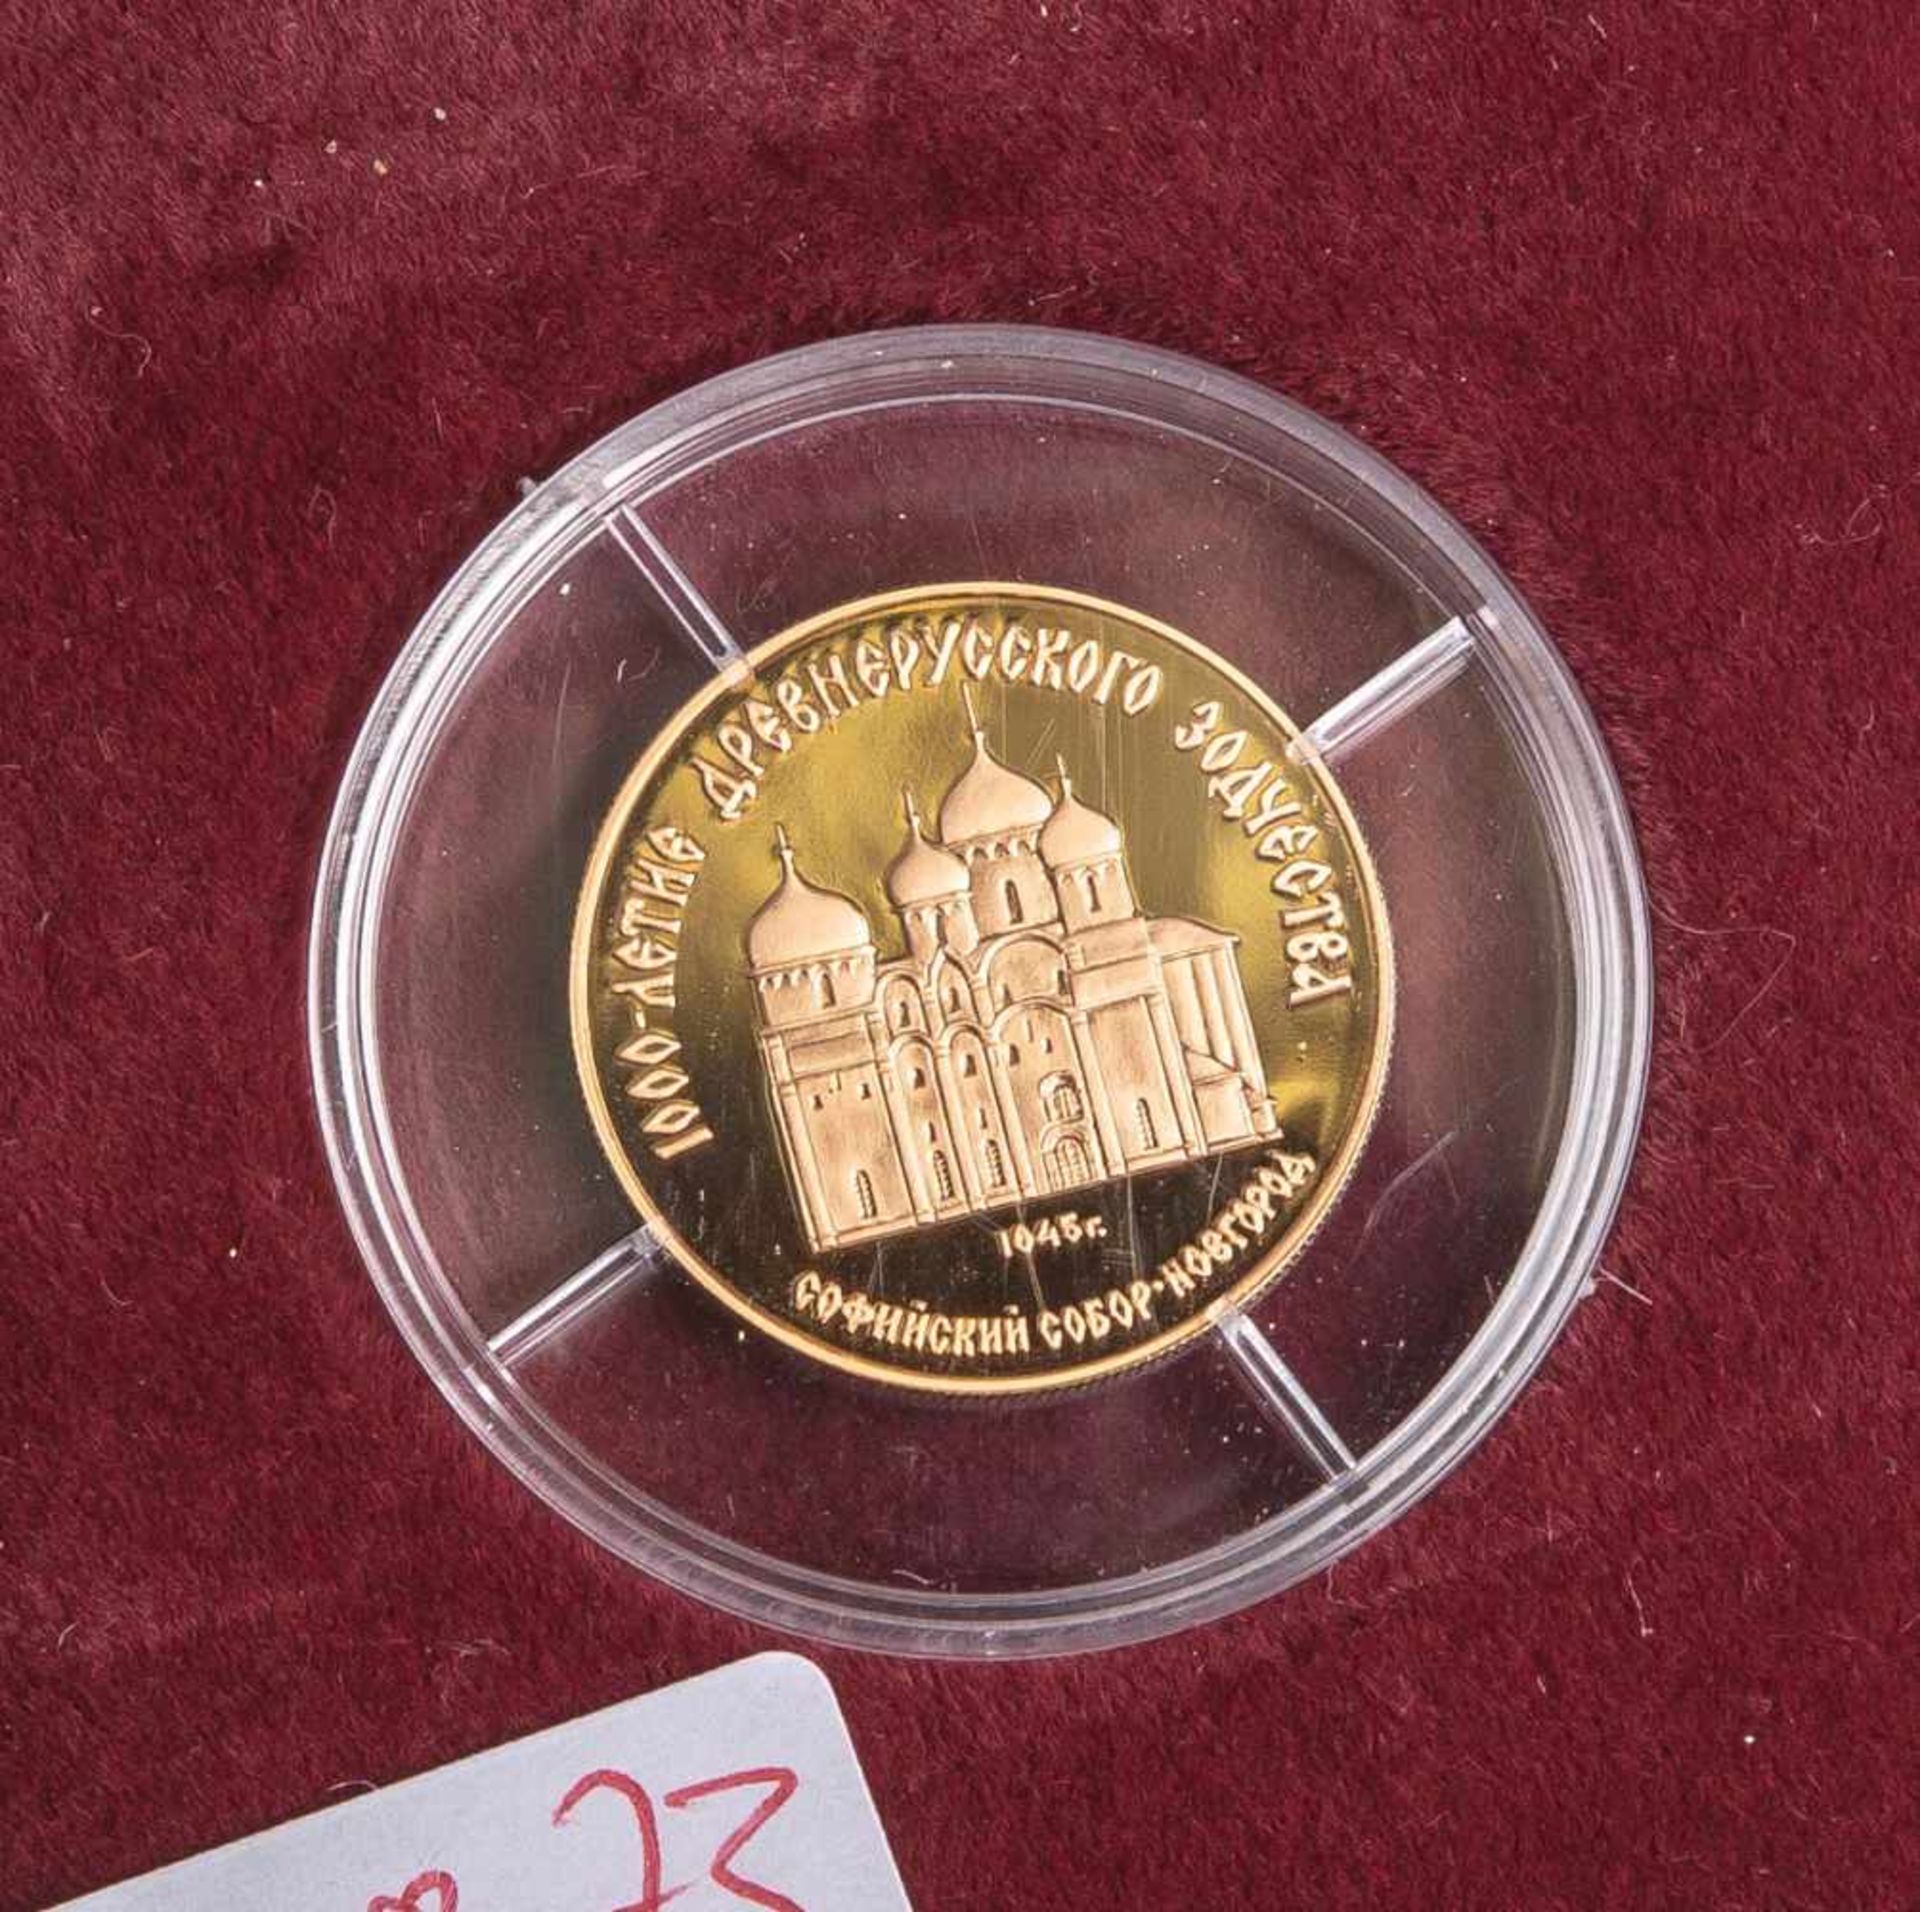 50 Rubel Gold (Russland), 1/4 Unze 1988, 900 fein, Auflage 25.000 Stück, in PP,<